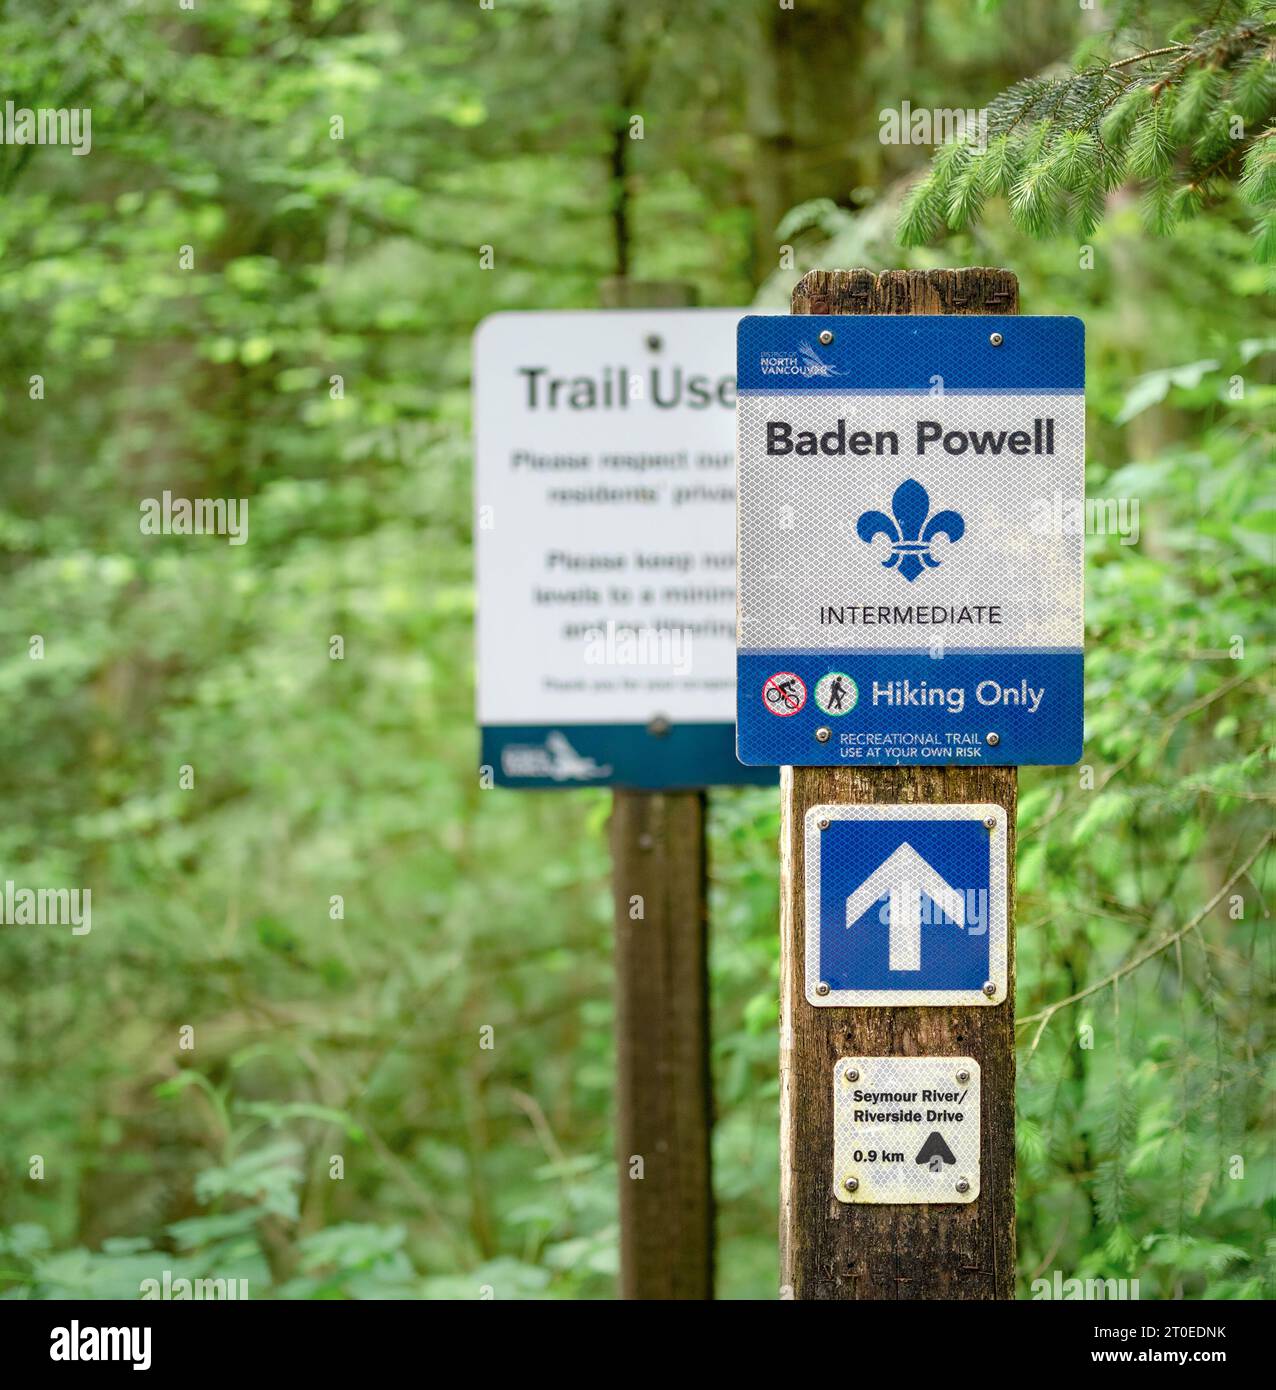 Célèbre panneau Baden Powell Hiking Trail à North Vancouver. Motif réfléchissant avec flèche directionnelle. Mise au point sélective avec fond forestier vert flou Banque D'Images